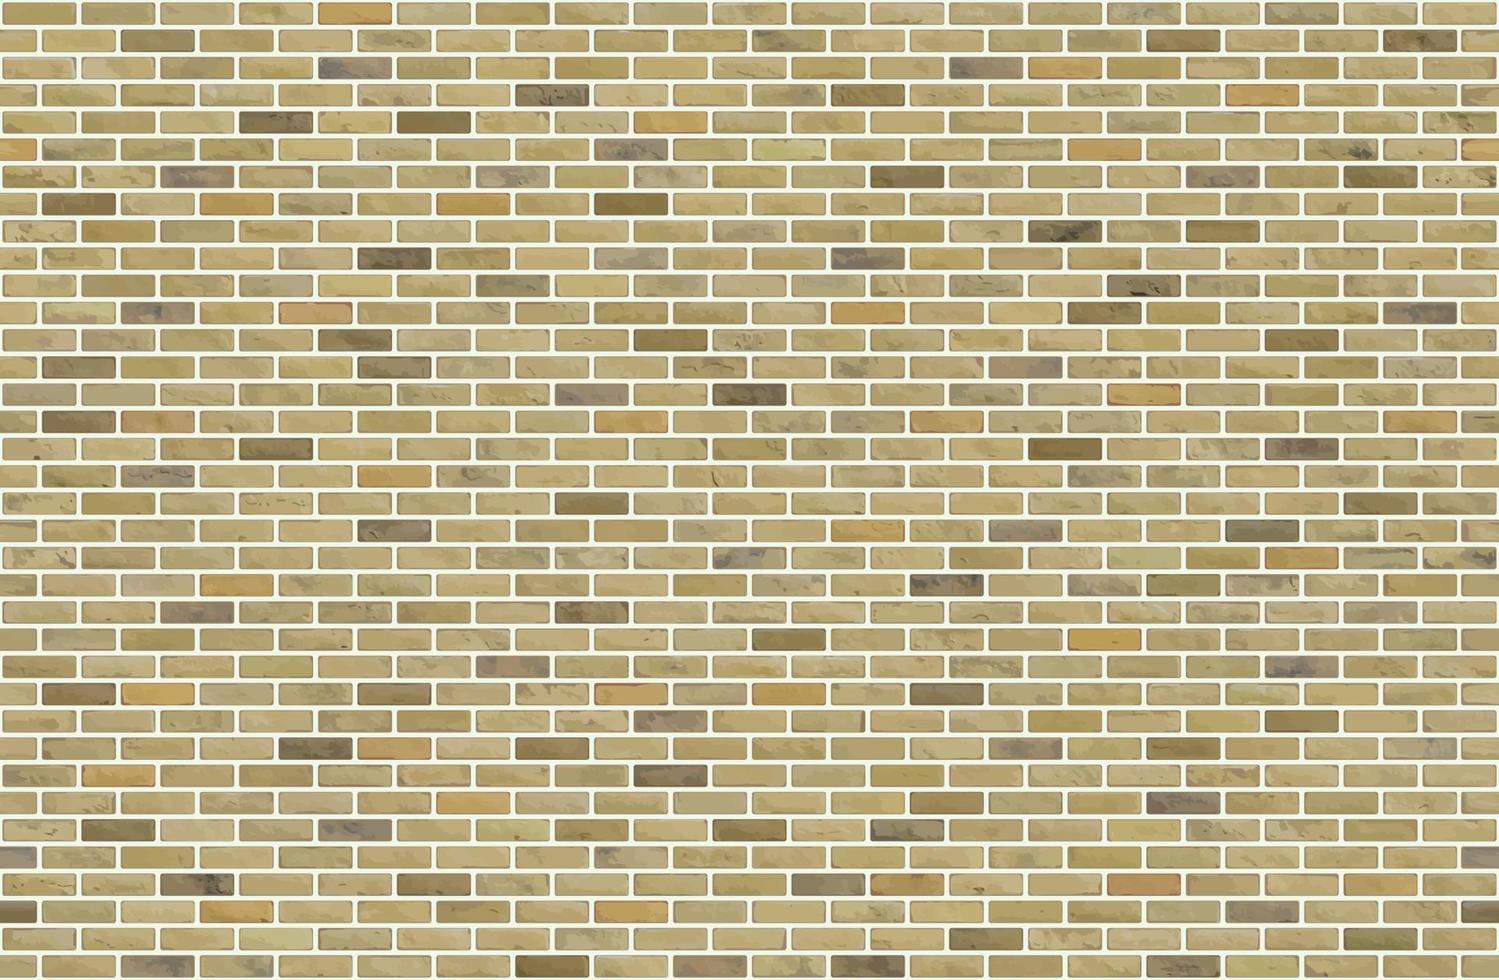 mooie blok bakstenen muur naadloze patroon textuur achtergrond vector